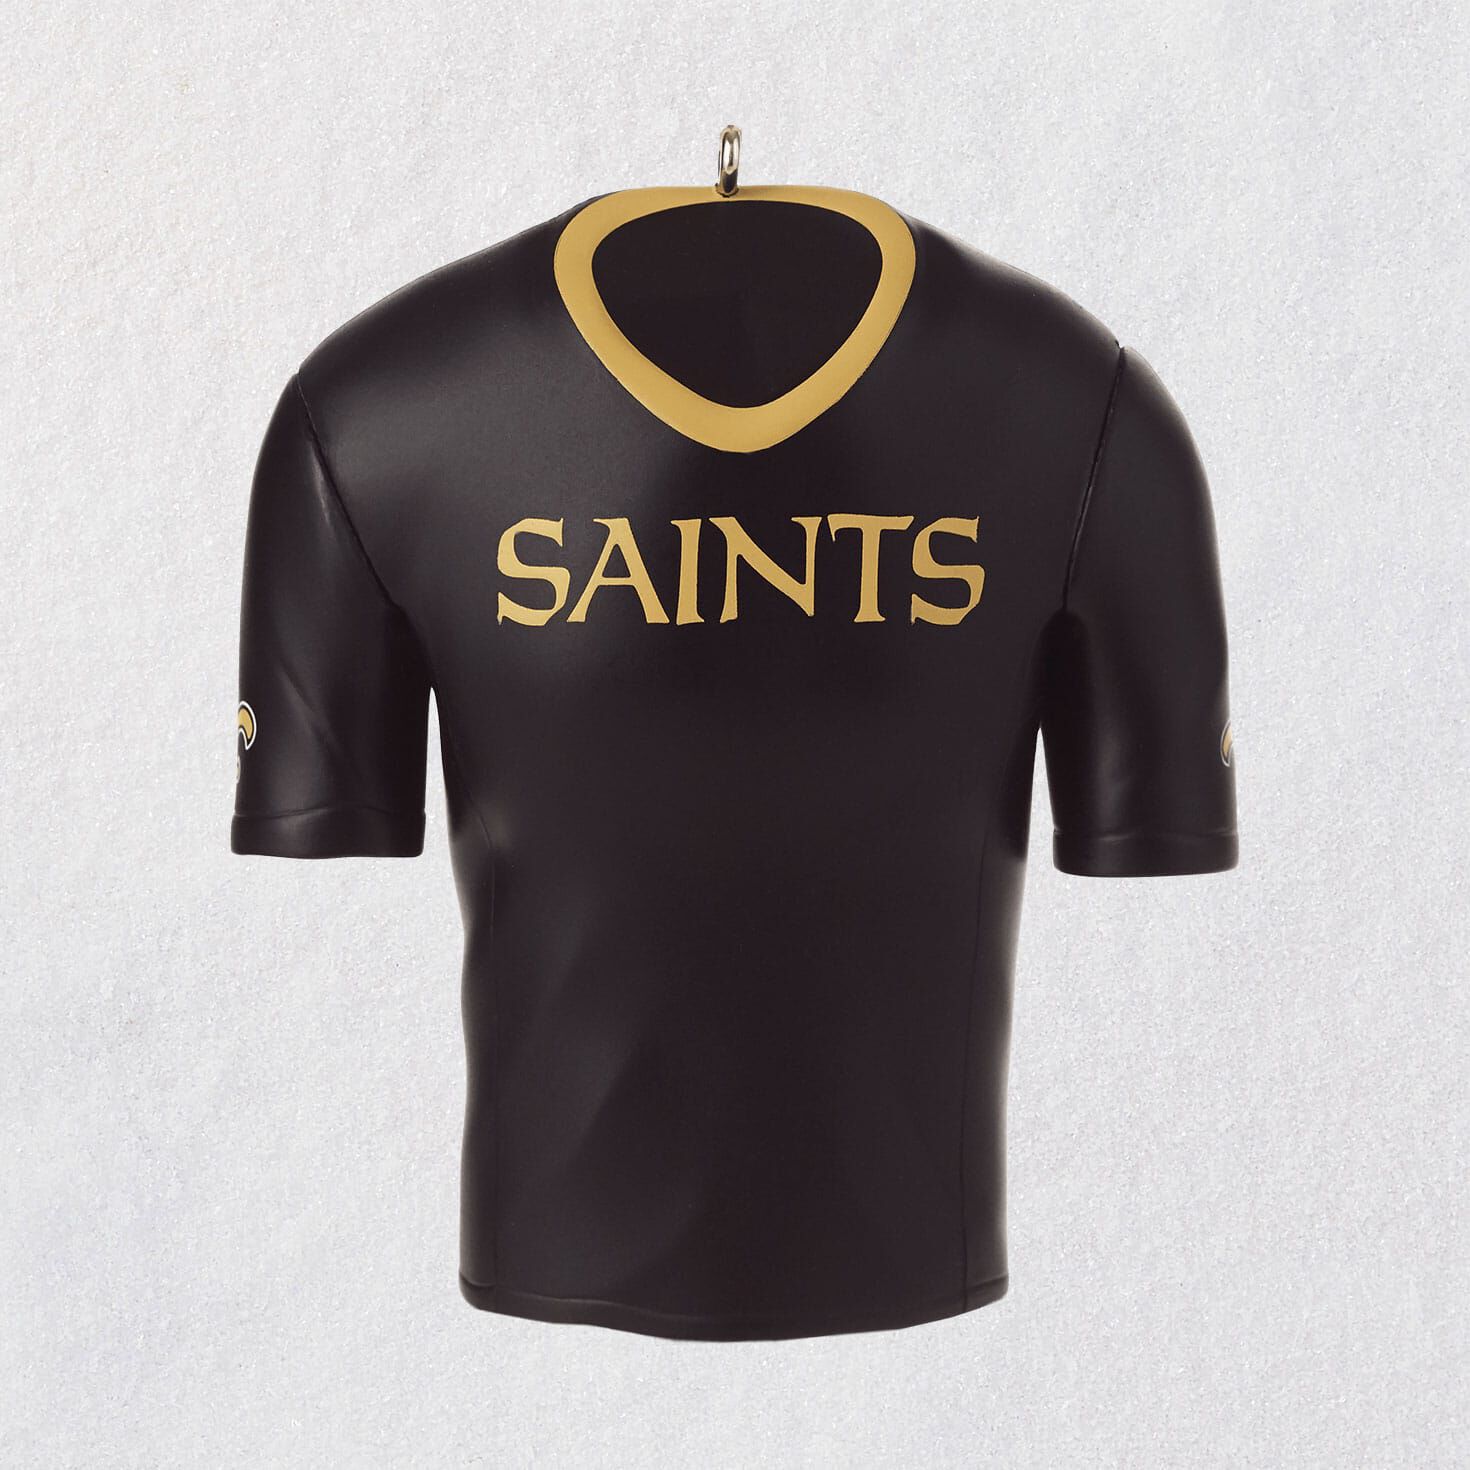 saints jersey new orleans